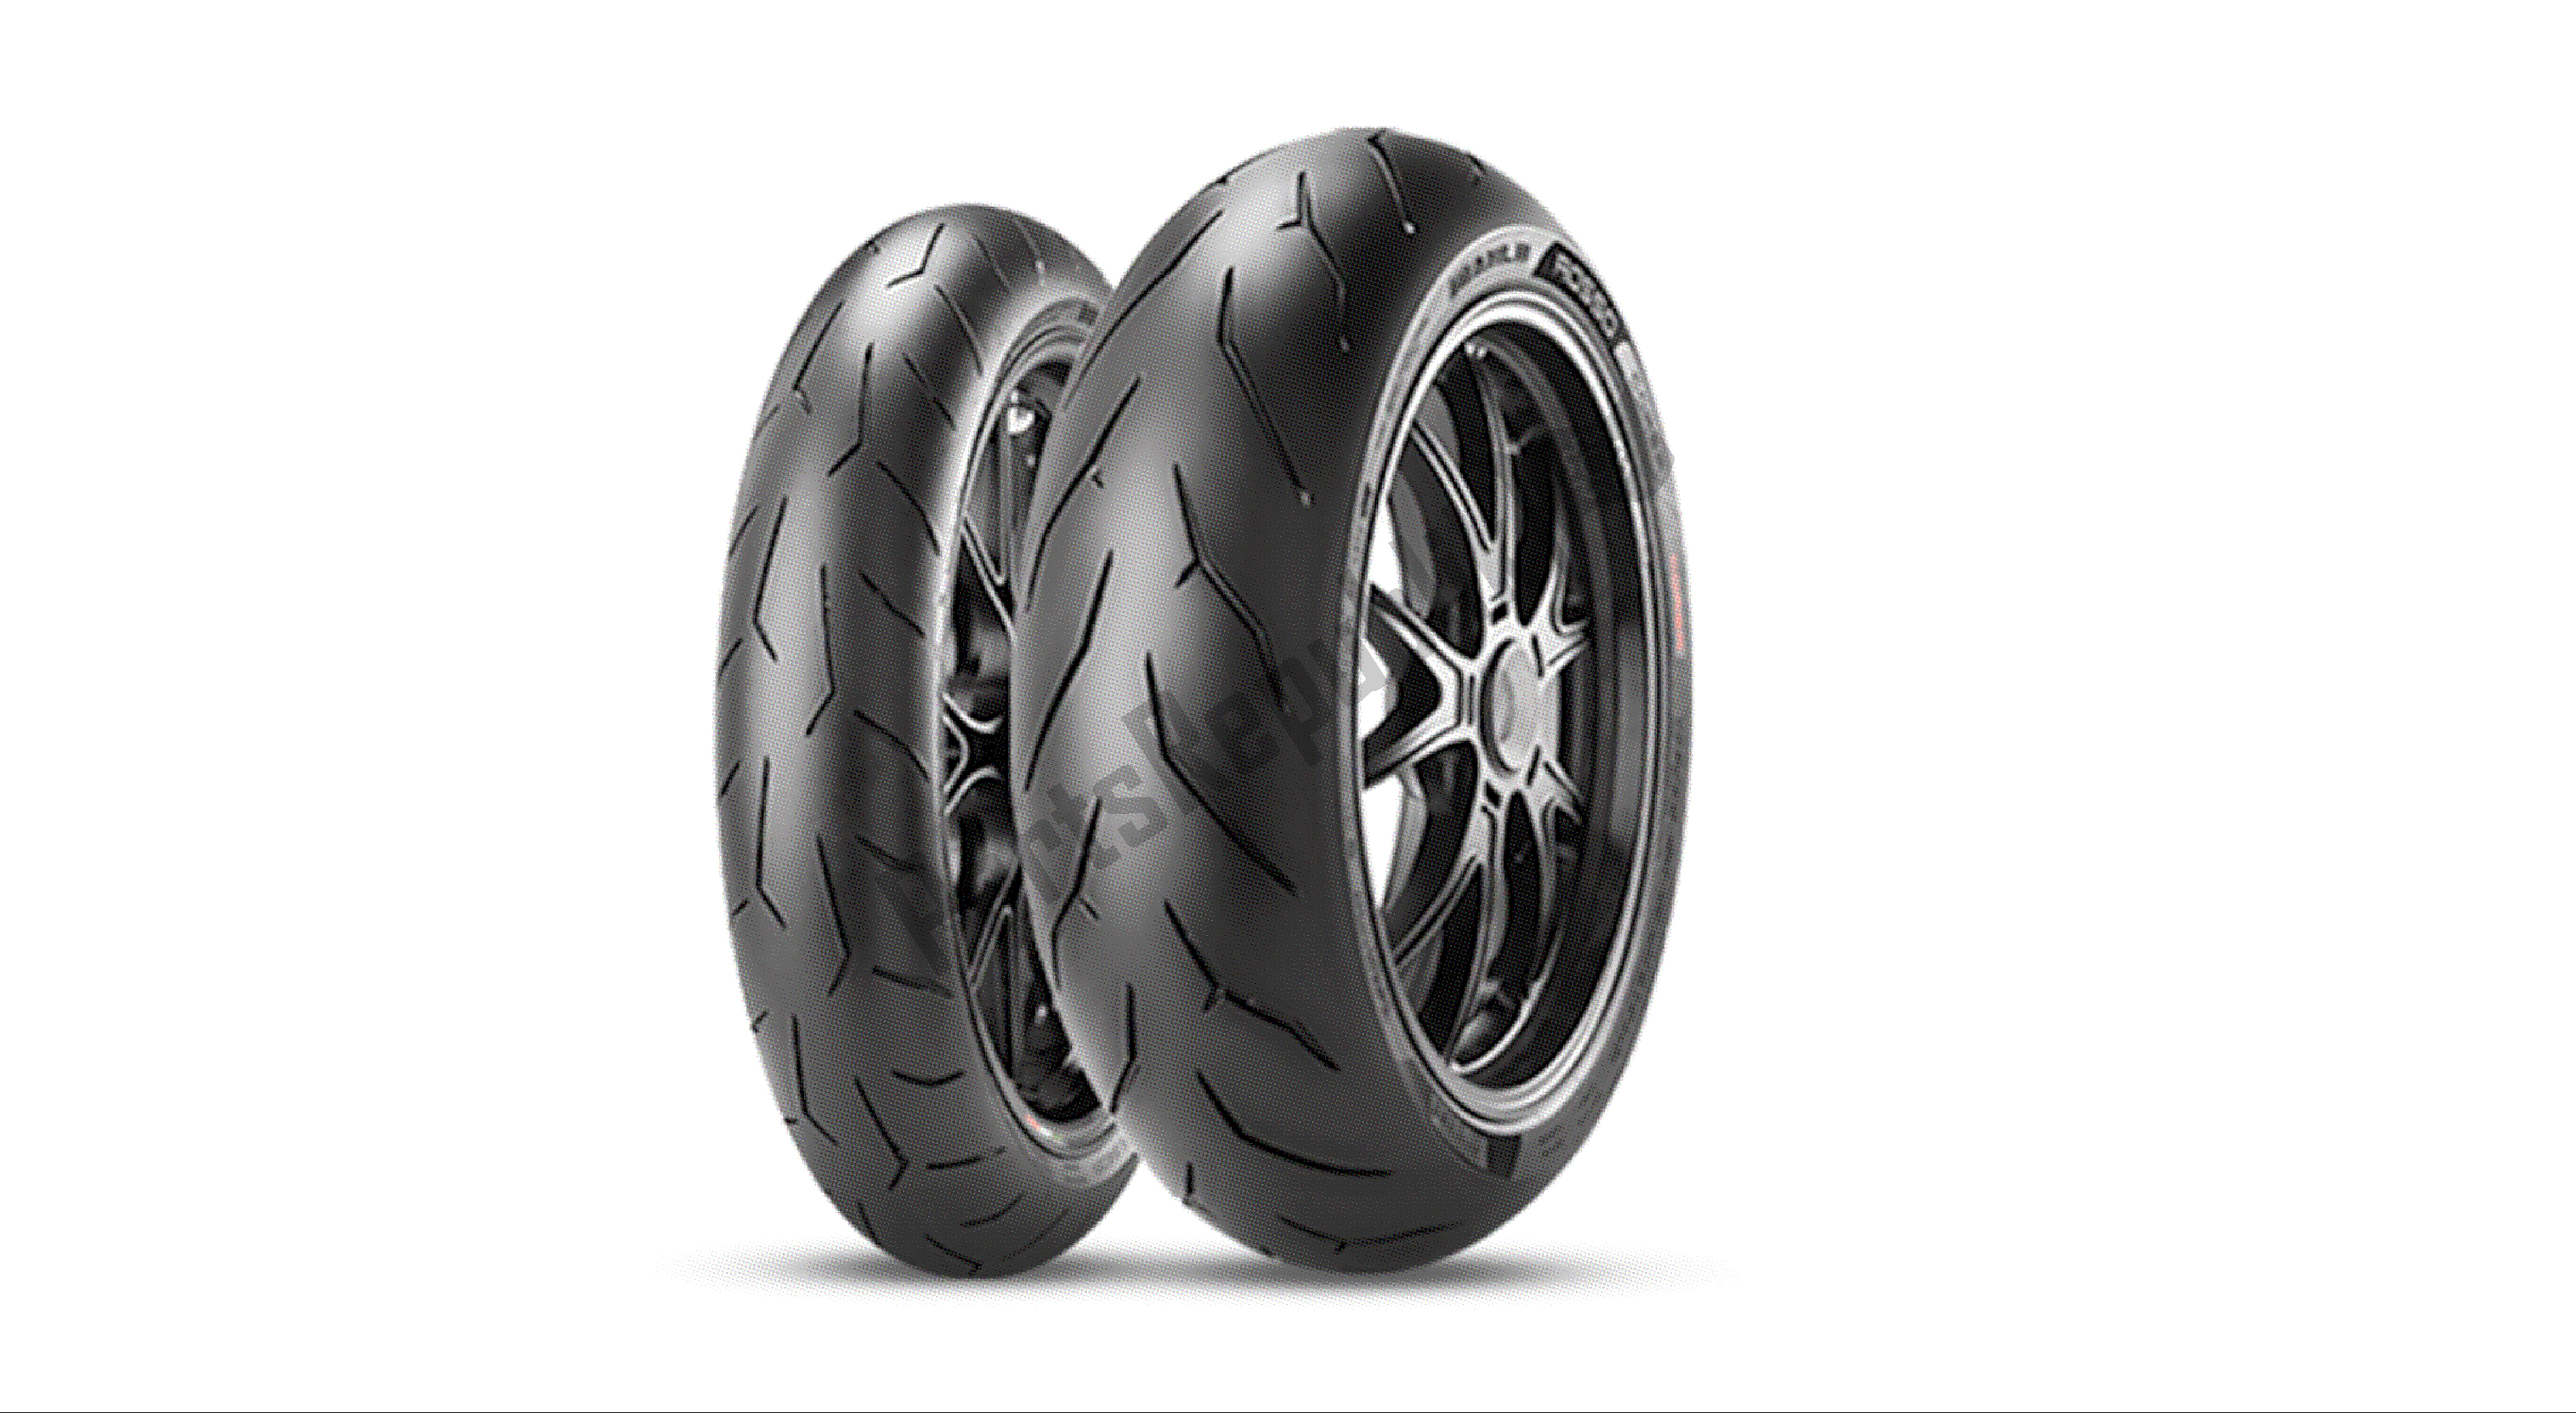 Todas las partes para Dibujo C1 - Neumáticos Pirelli Diablo ? Rosso Corsa [mod: 1299] Group de Ducati Panigale ABS 1299 2016